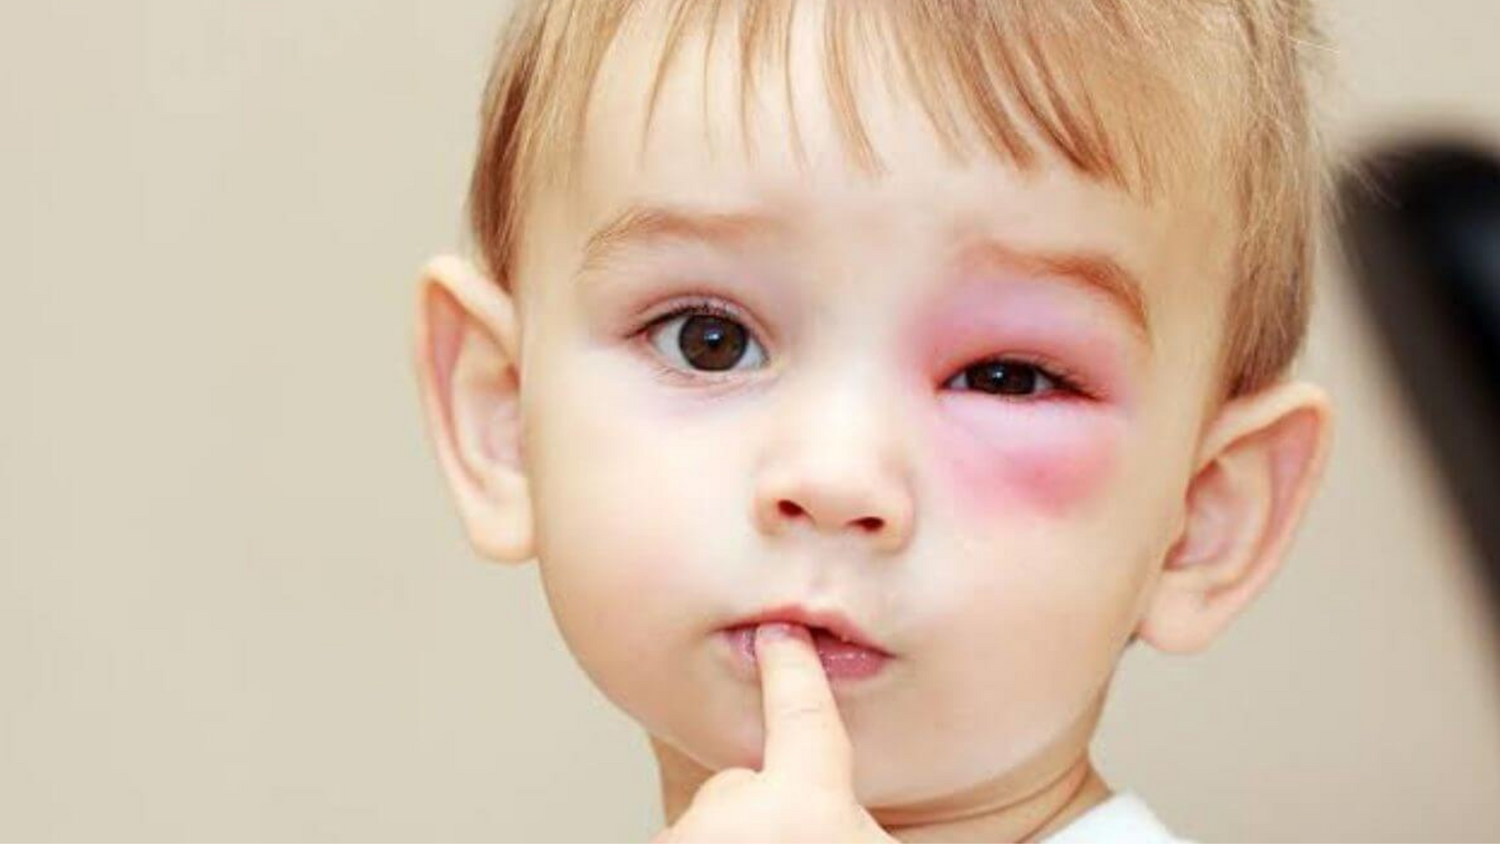 Seu filho machucou o olho? Confira os primeiros socorros essenciais!